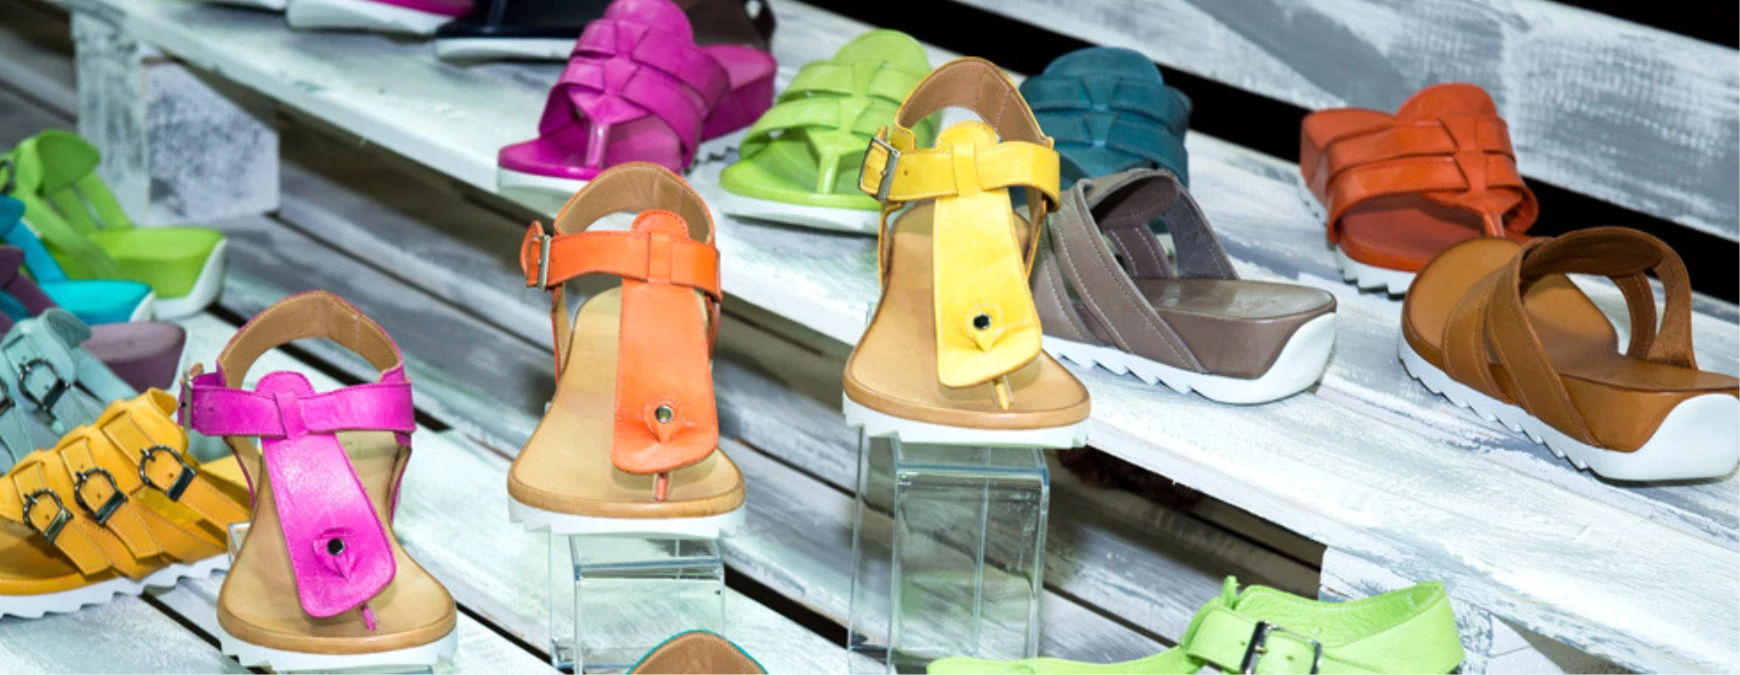 Aymod Uluslararası Ayakkabı Moda Fuarı